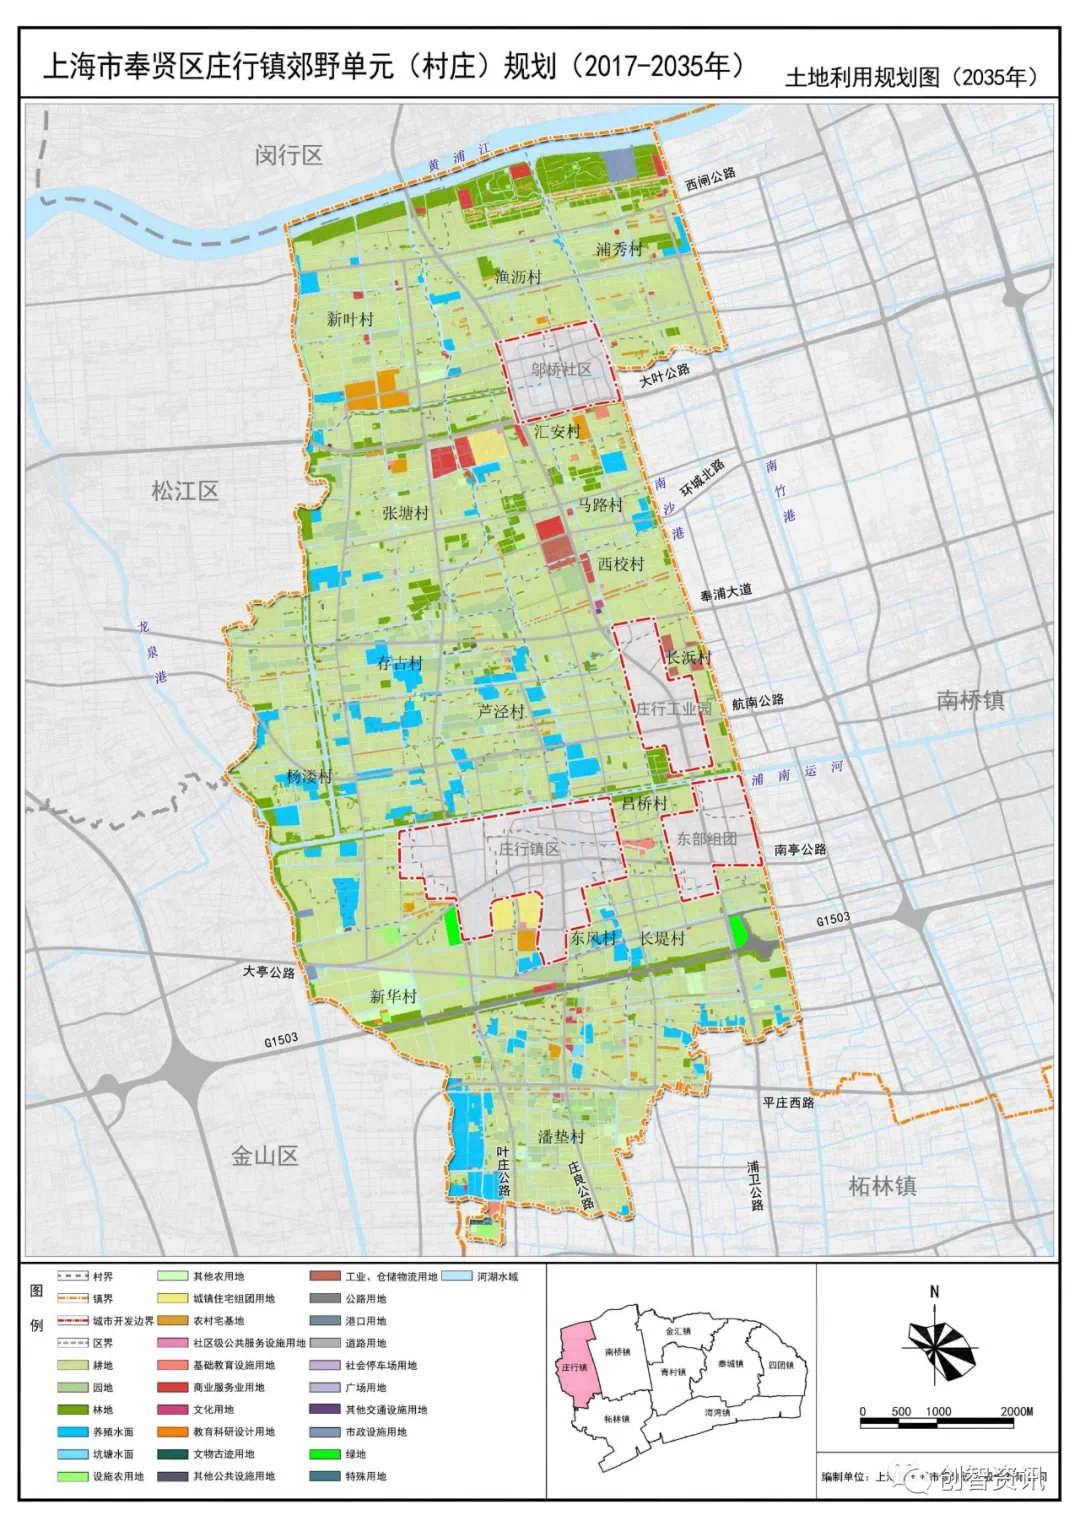 可以@创智资讯《奉贤区西渡街道郊野单元(村庄)规划(2017-2035年》